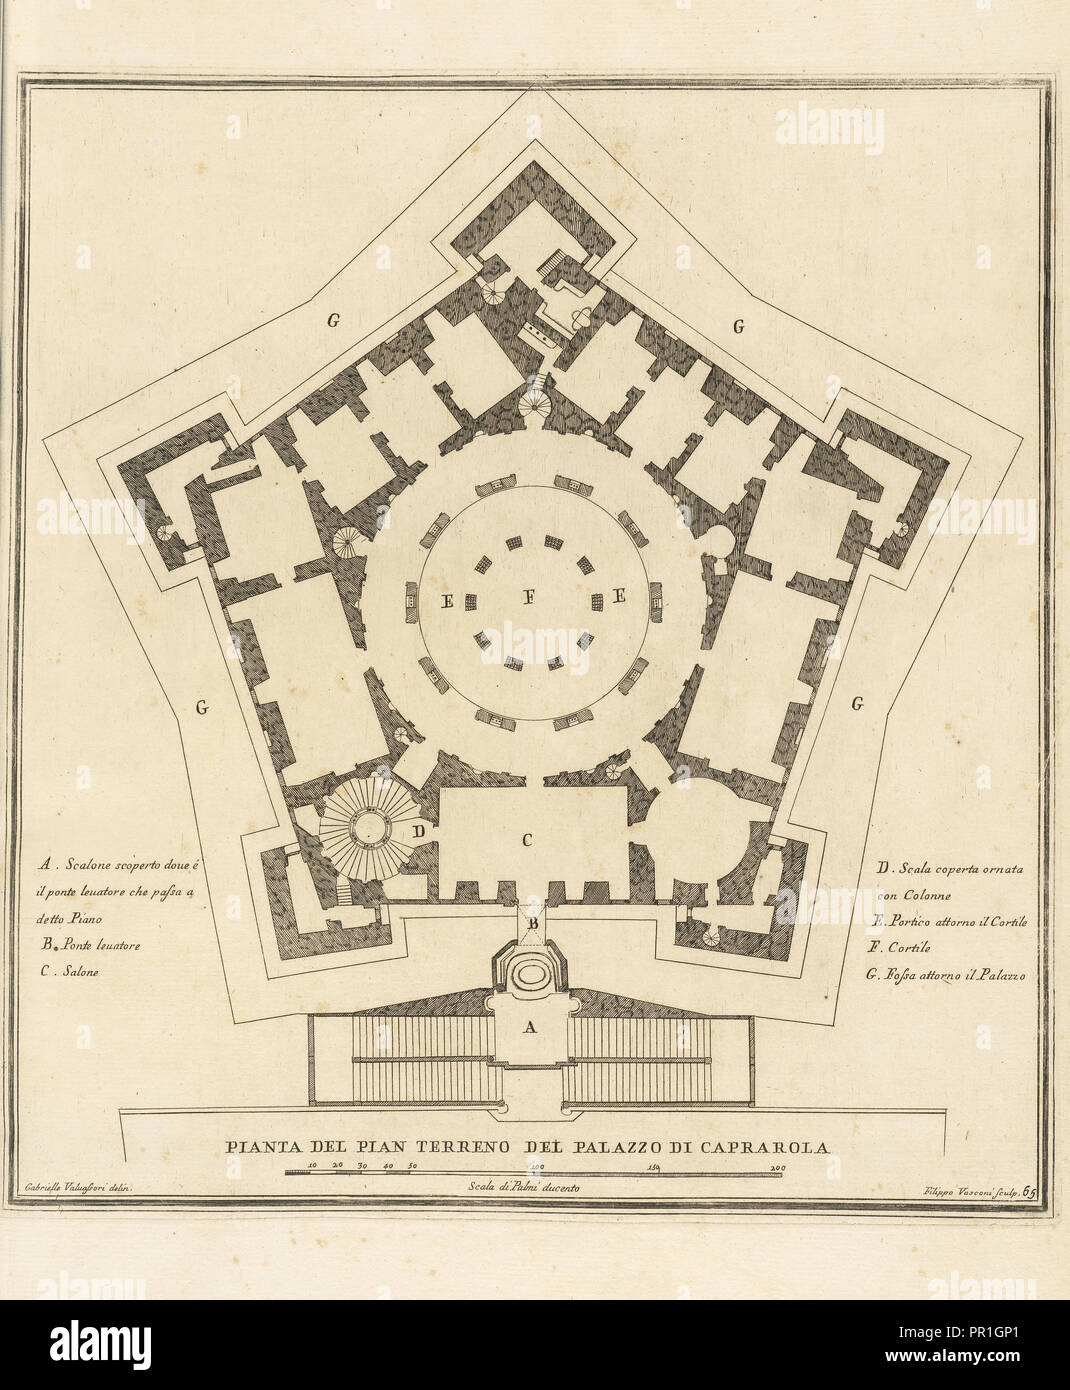 Pianta del pian terreno del Palazzo di Caprarola, Stvdio architettvra d'civile sopra gli ornamenti porte e finestre tratti di Banque D'Images